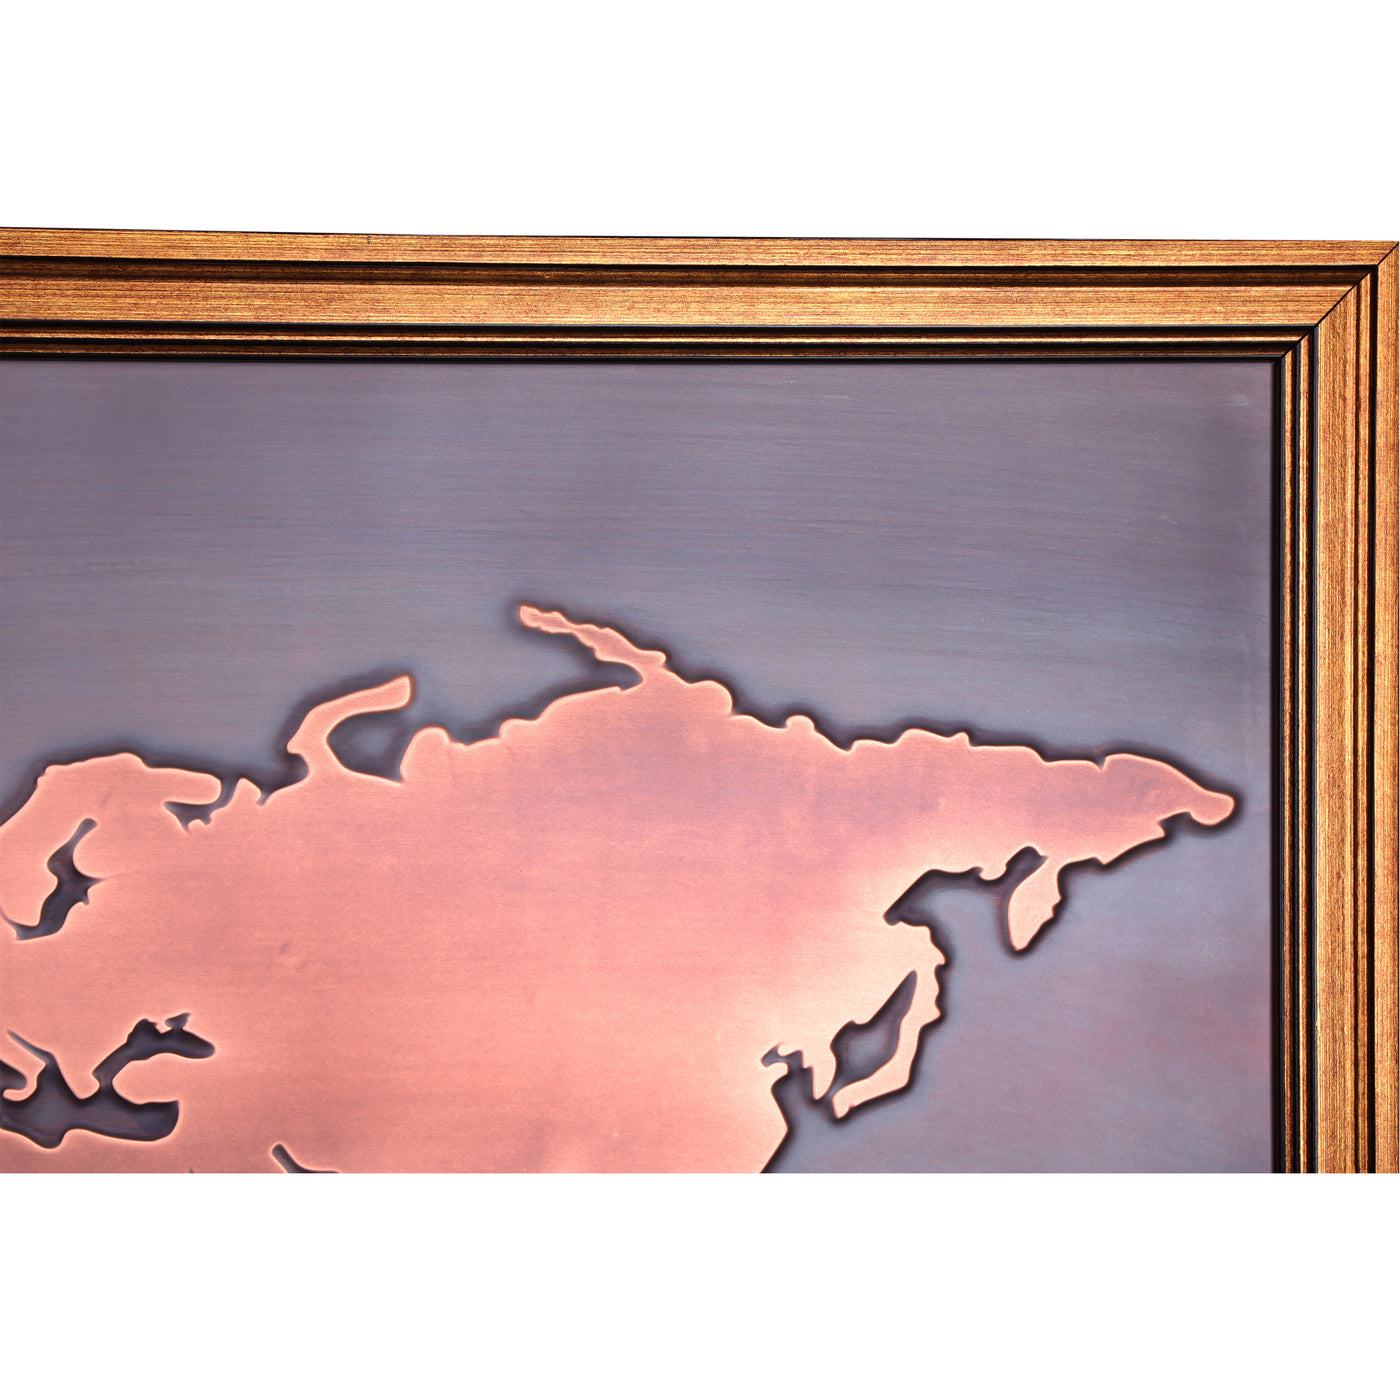 World Map Copper Wall Art